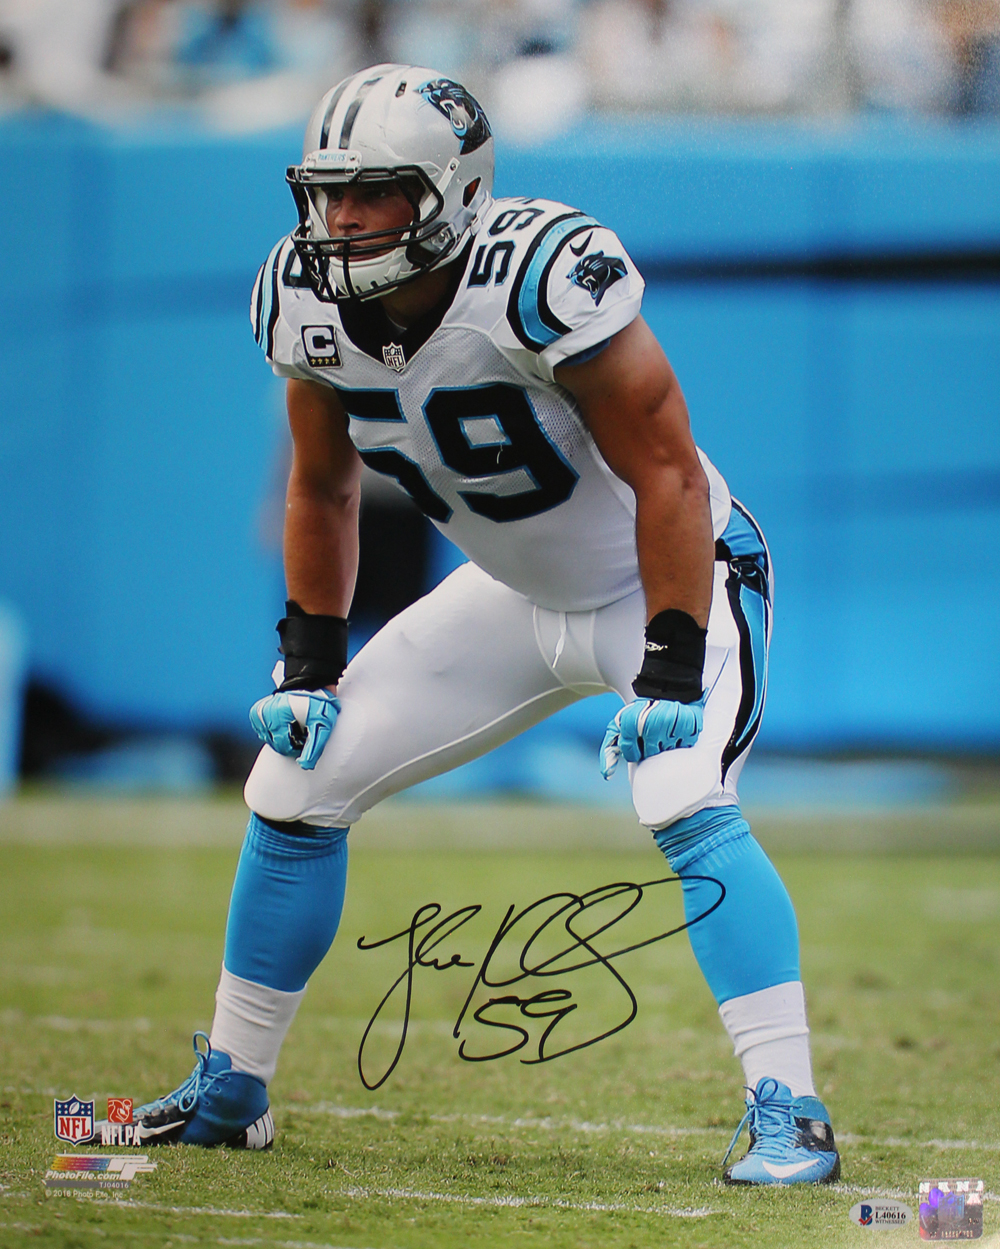 Luke Kuechly Autographed/Signed Carolina Panthers 16x20 Photo Beckett